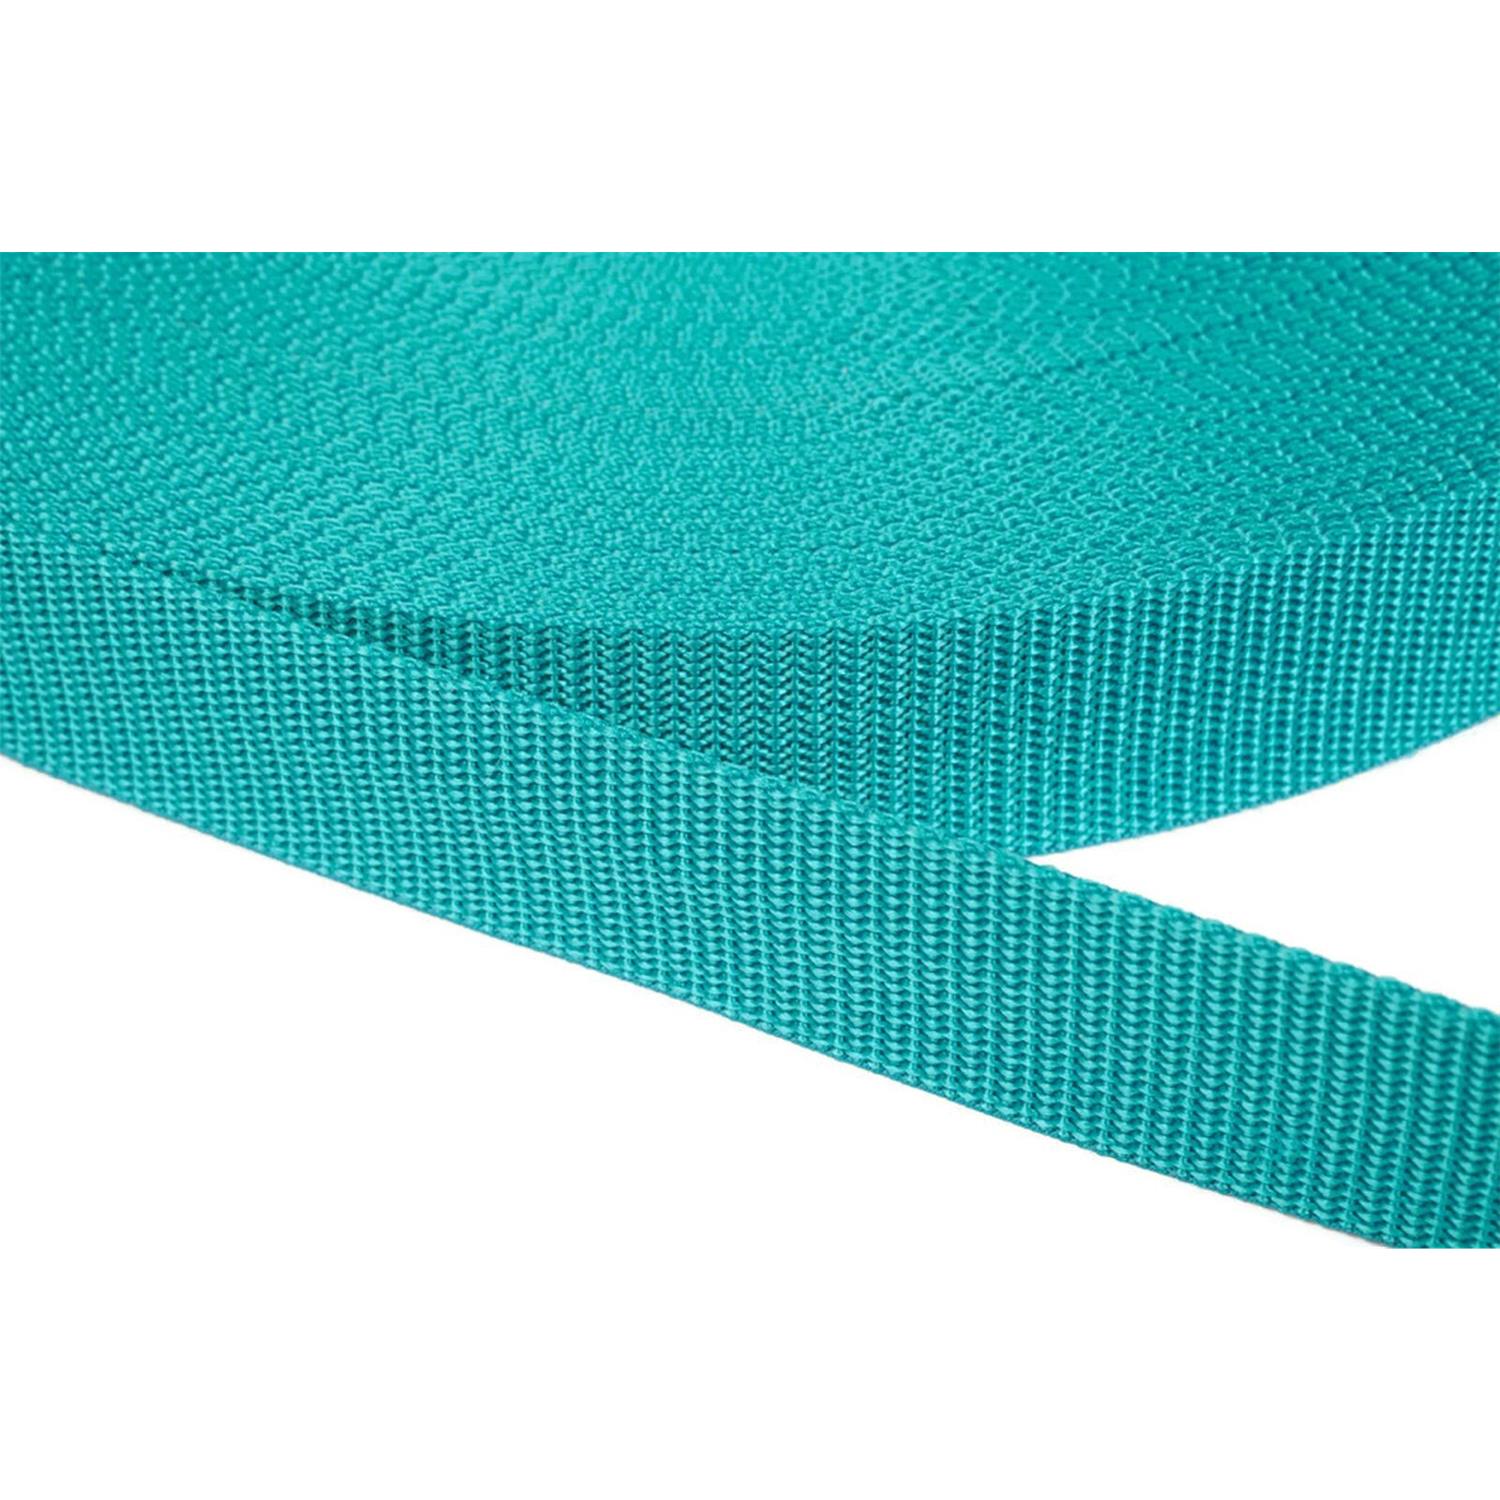 Gurtband 30mm breit aus Polypropylen in 41 Farben 42 - türkisgrün 12 Meter